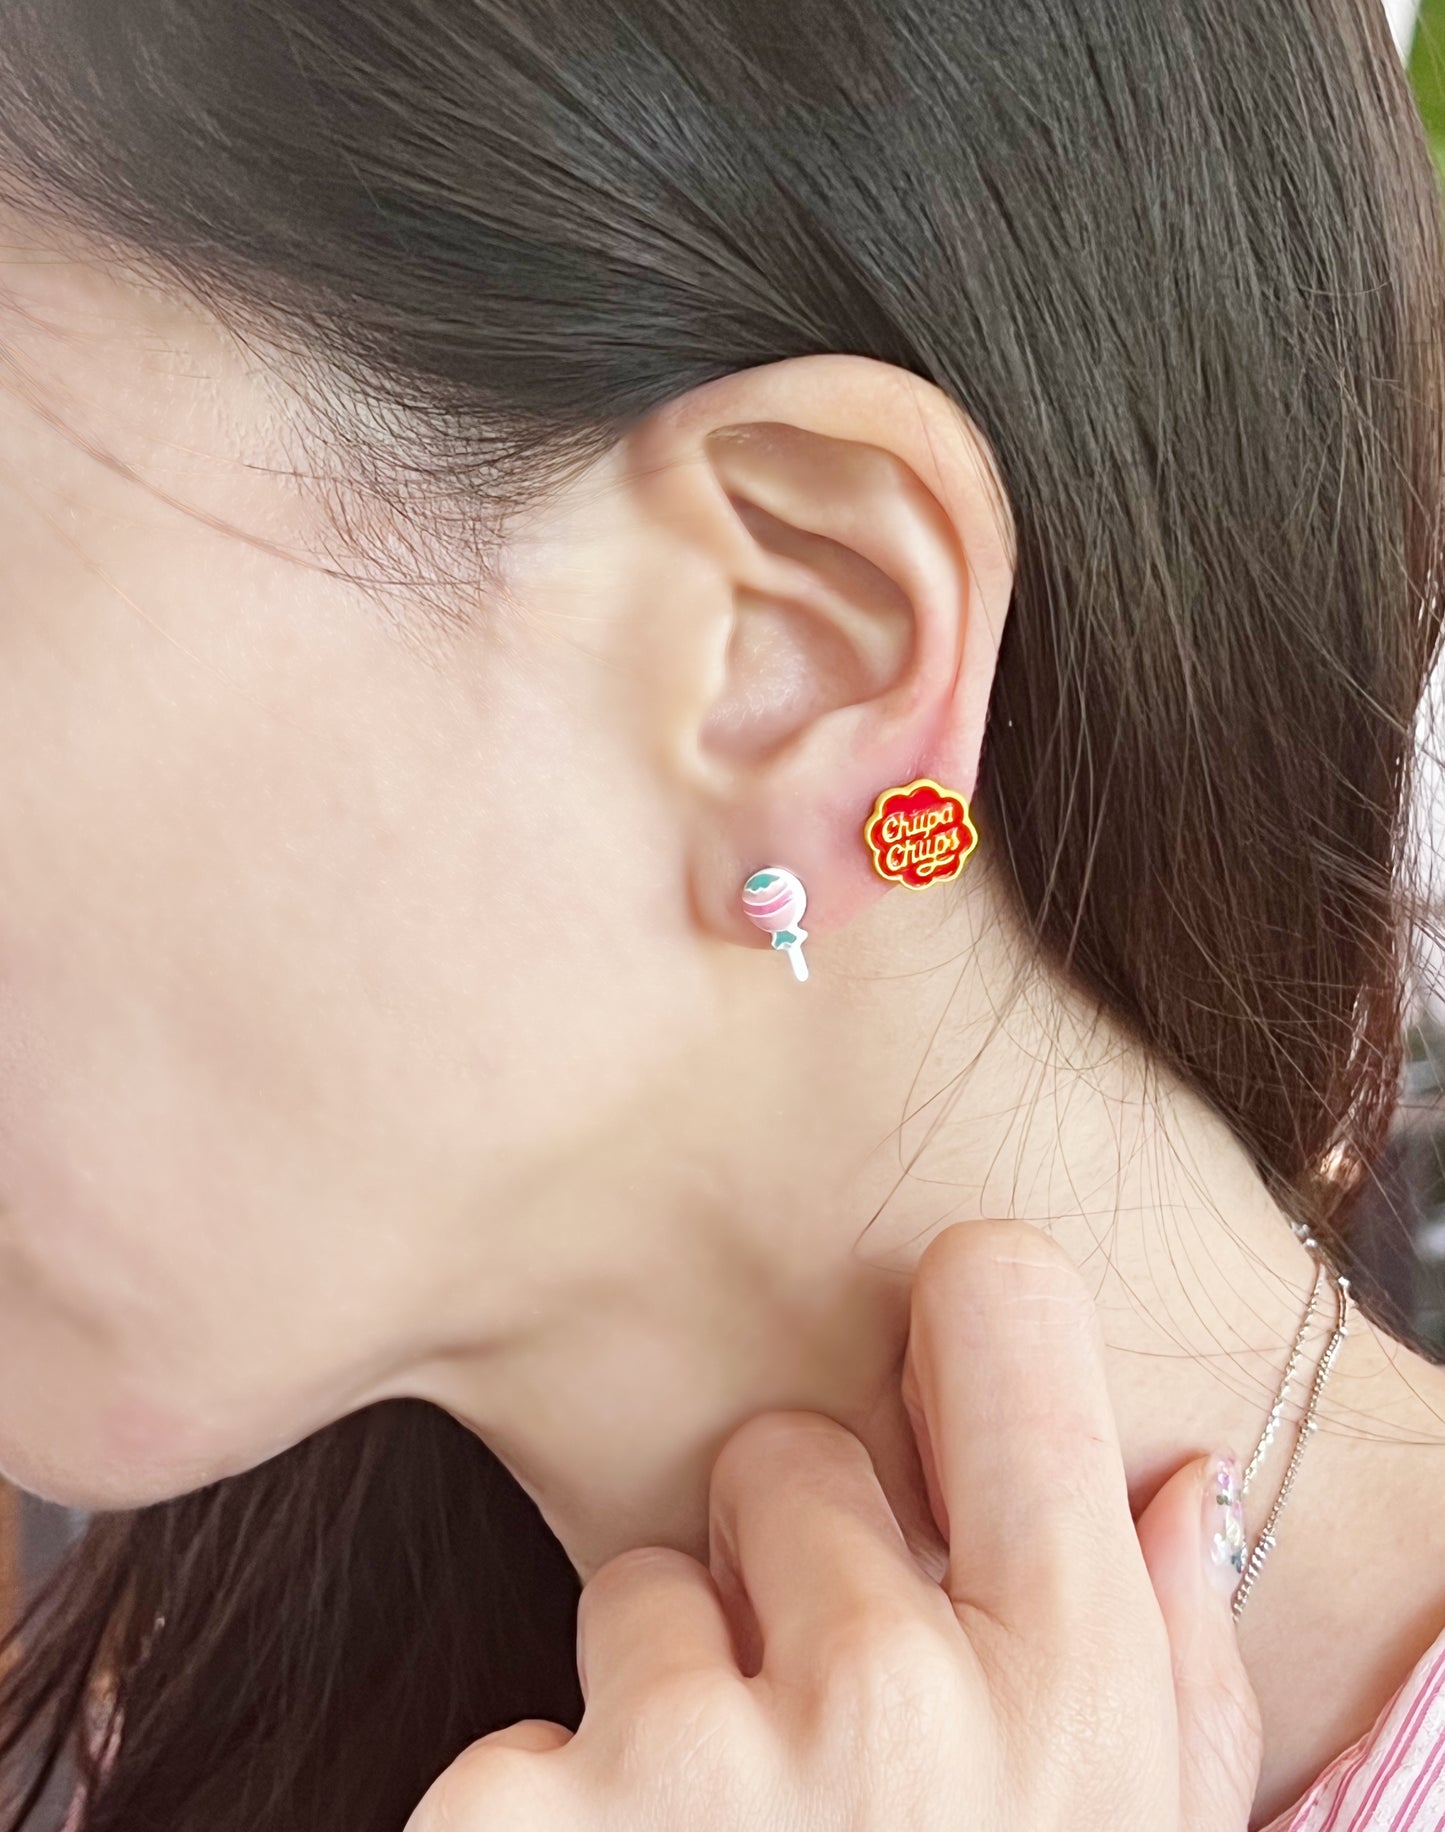 Chupa Chups Stud Earrings , Candy Earrings,  Lollipop earrings